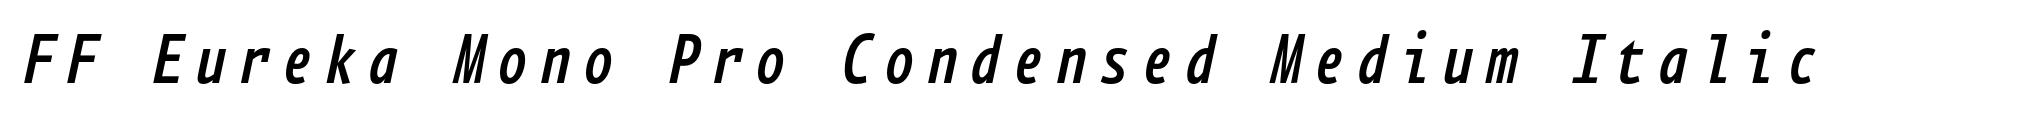 FF Eureka Mono Pro Condensed Medium Italic image